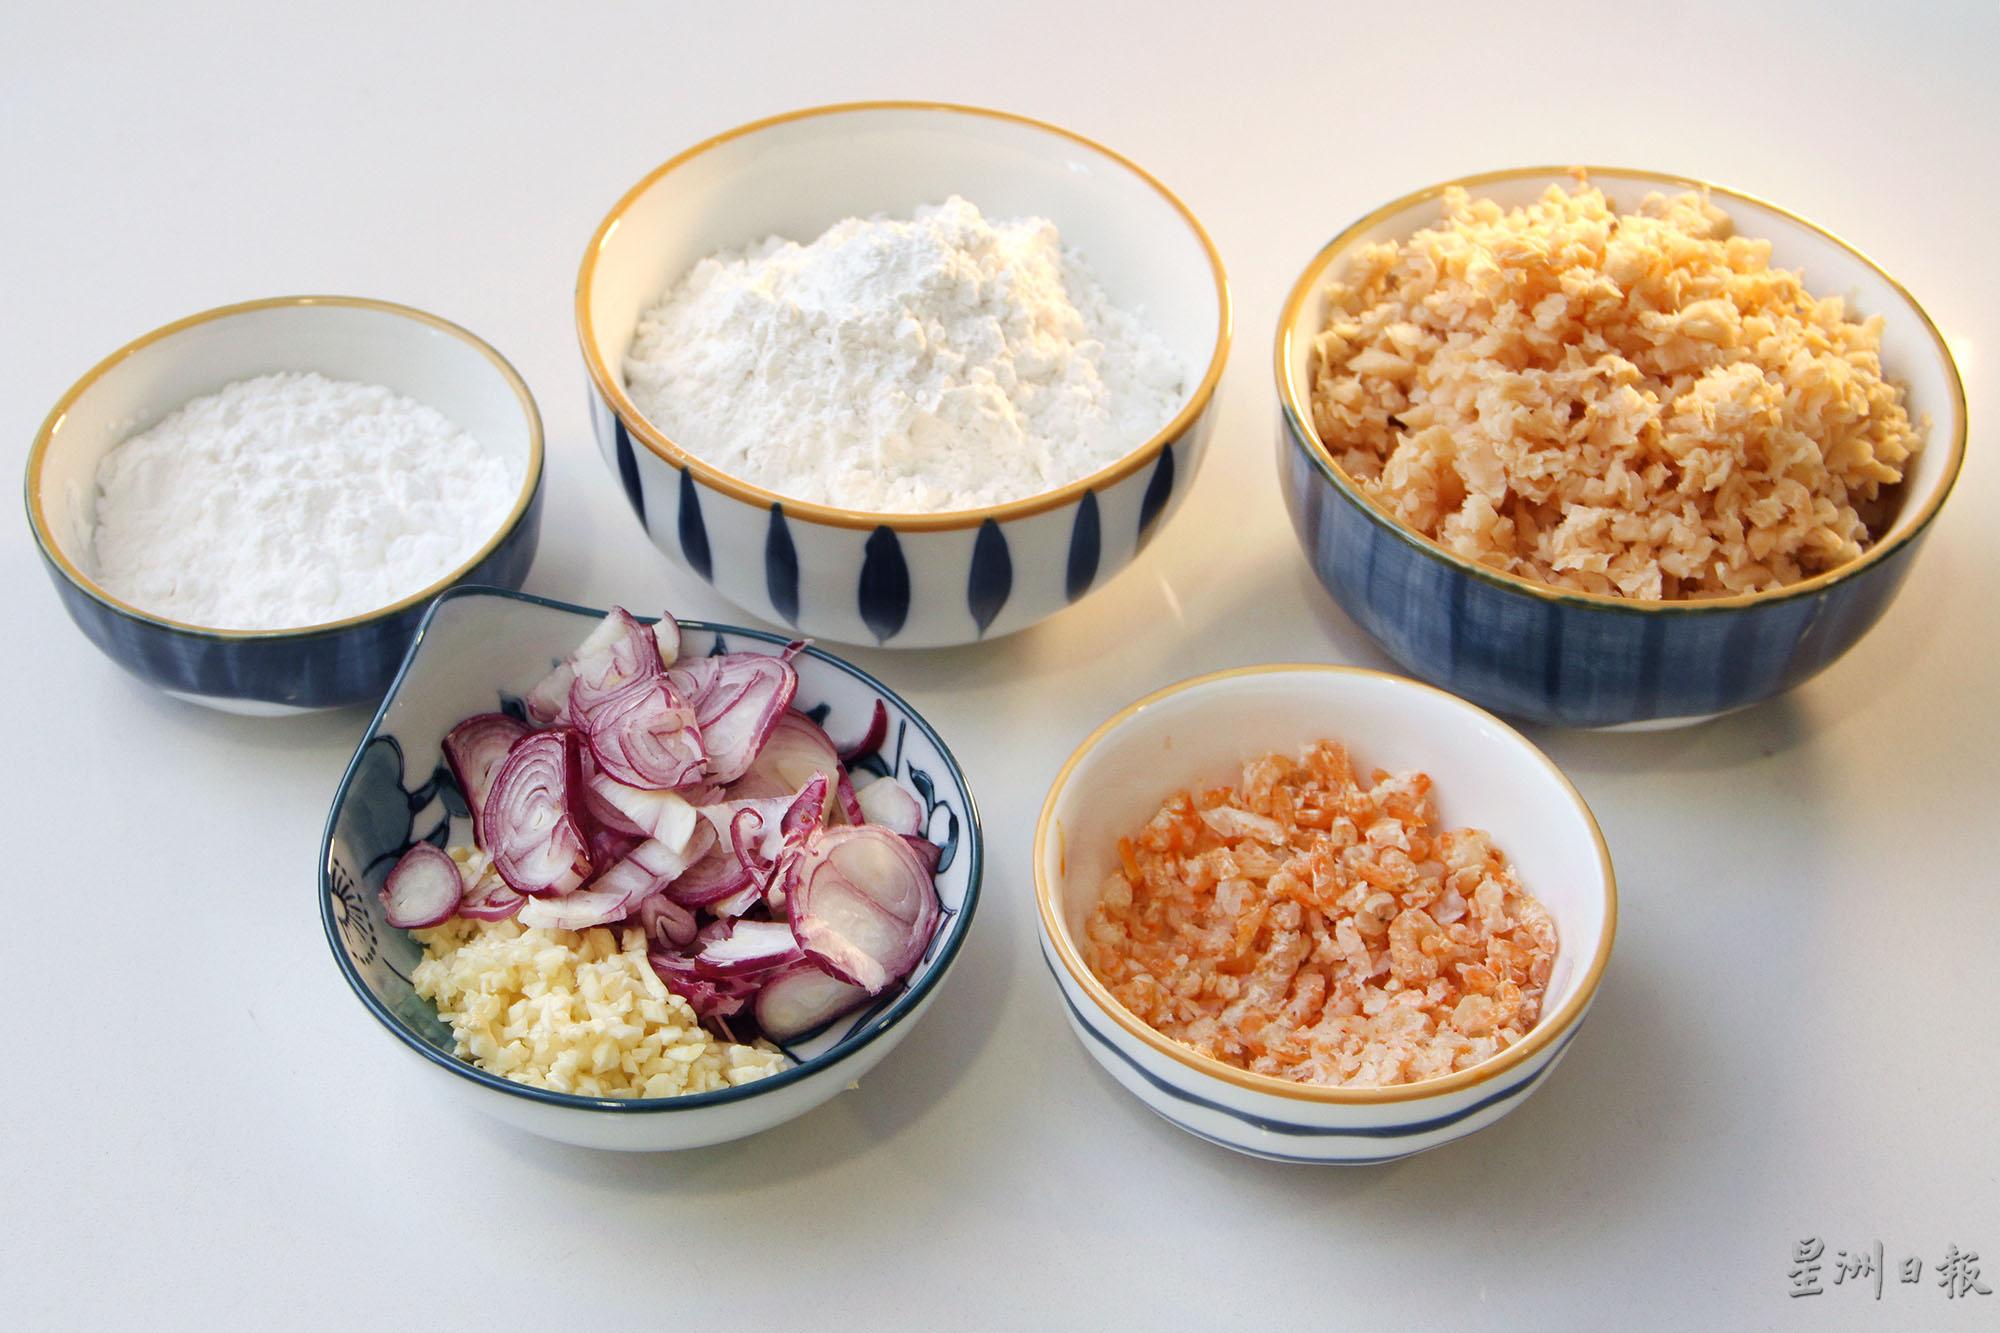 潮州水粿的材料有粘米粉、薯粉、虾米、蒜头、小葱及菜脯。